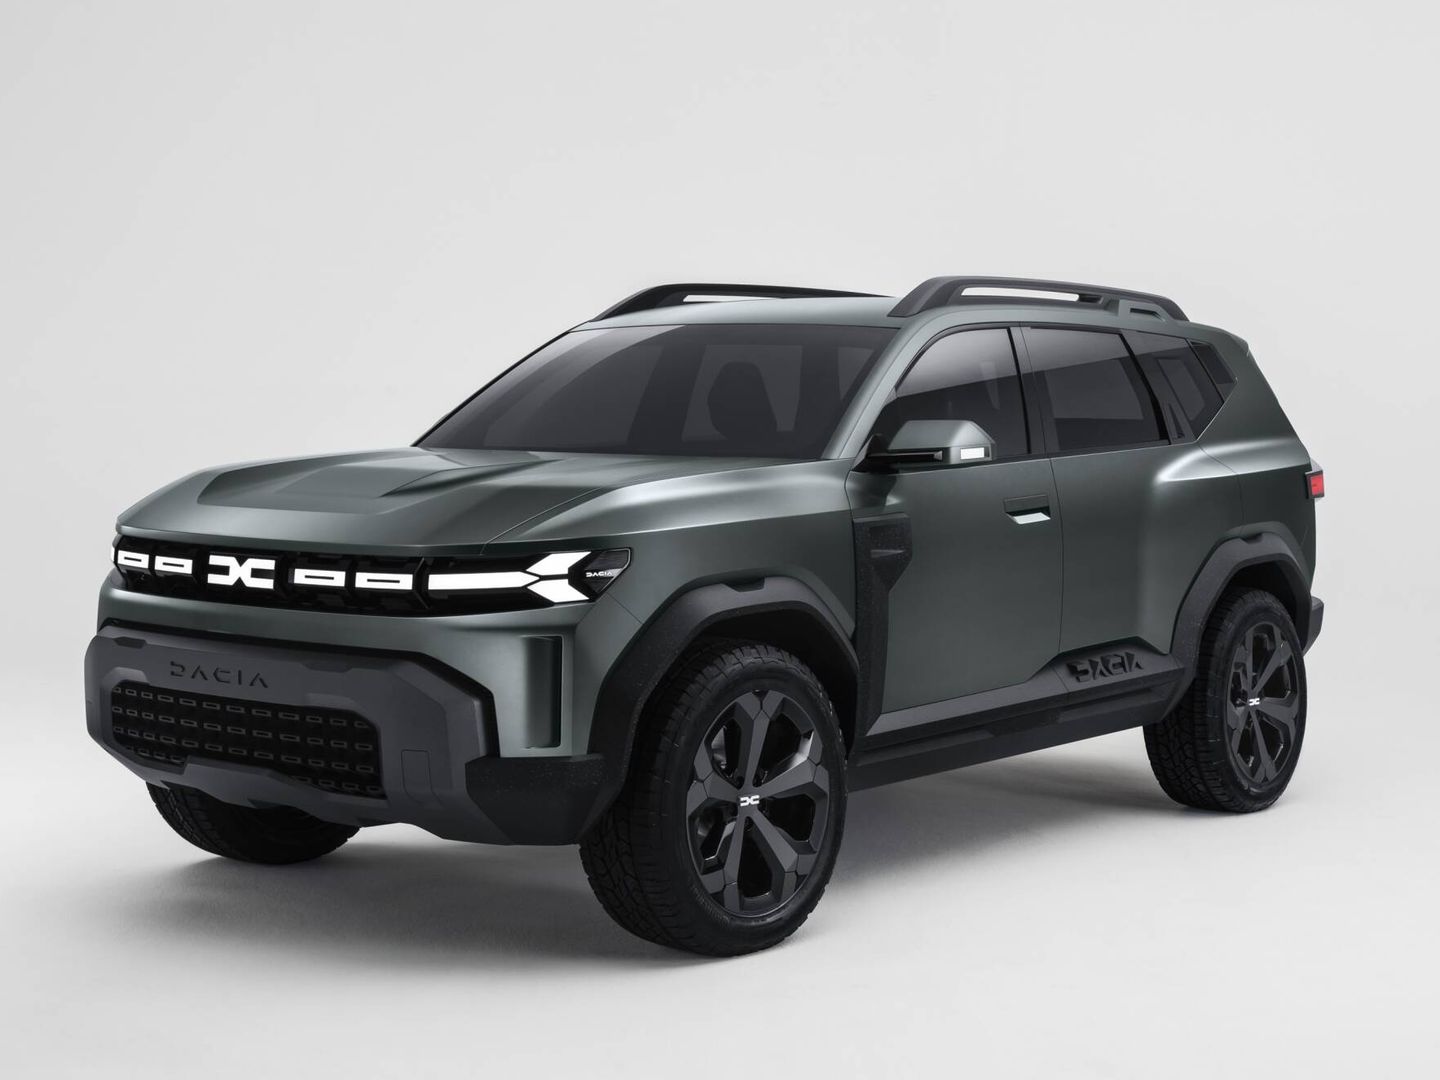 El Bigster Concept anticipa cómo será el futuro SUV grande de Dacia, previsto para 2025.